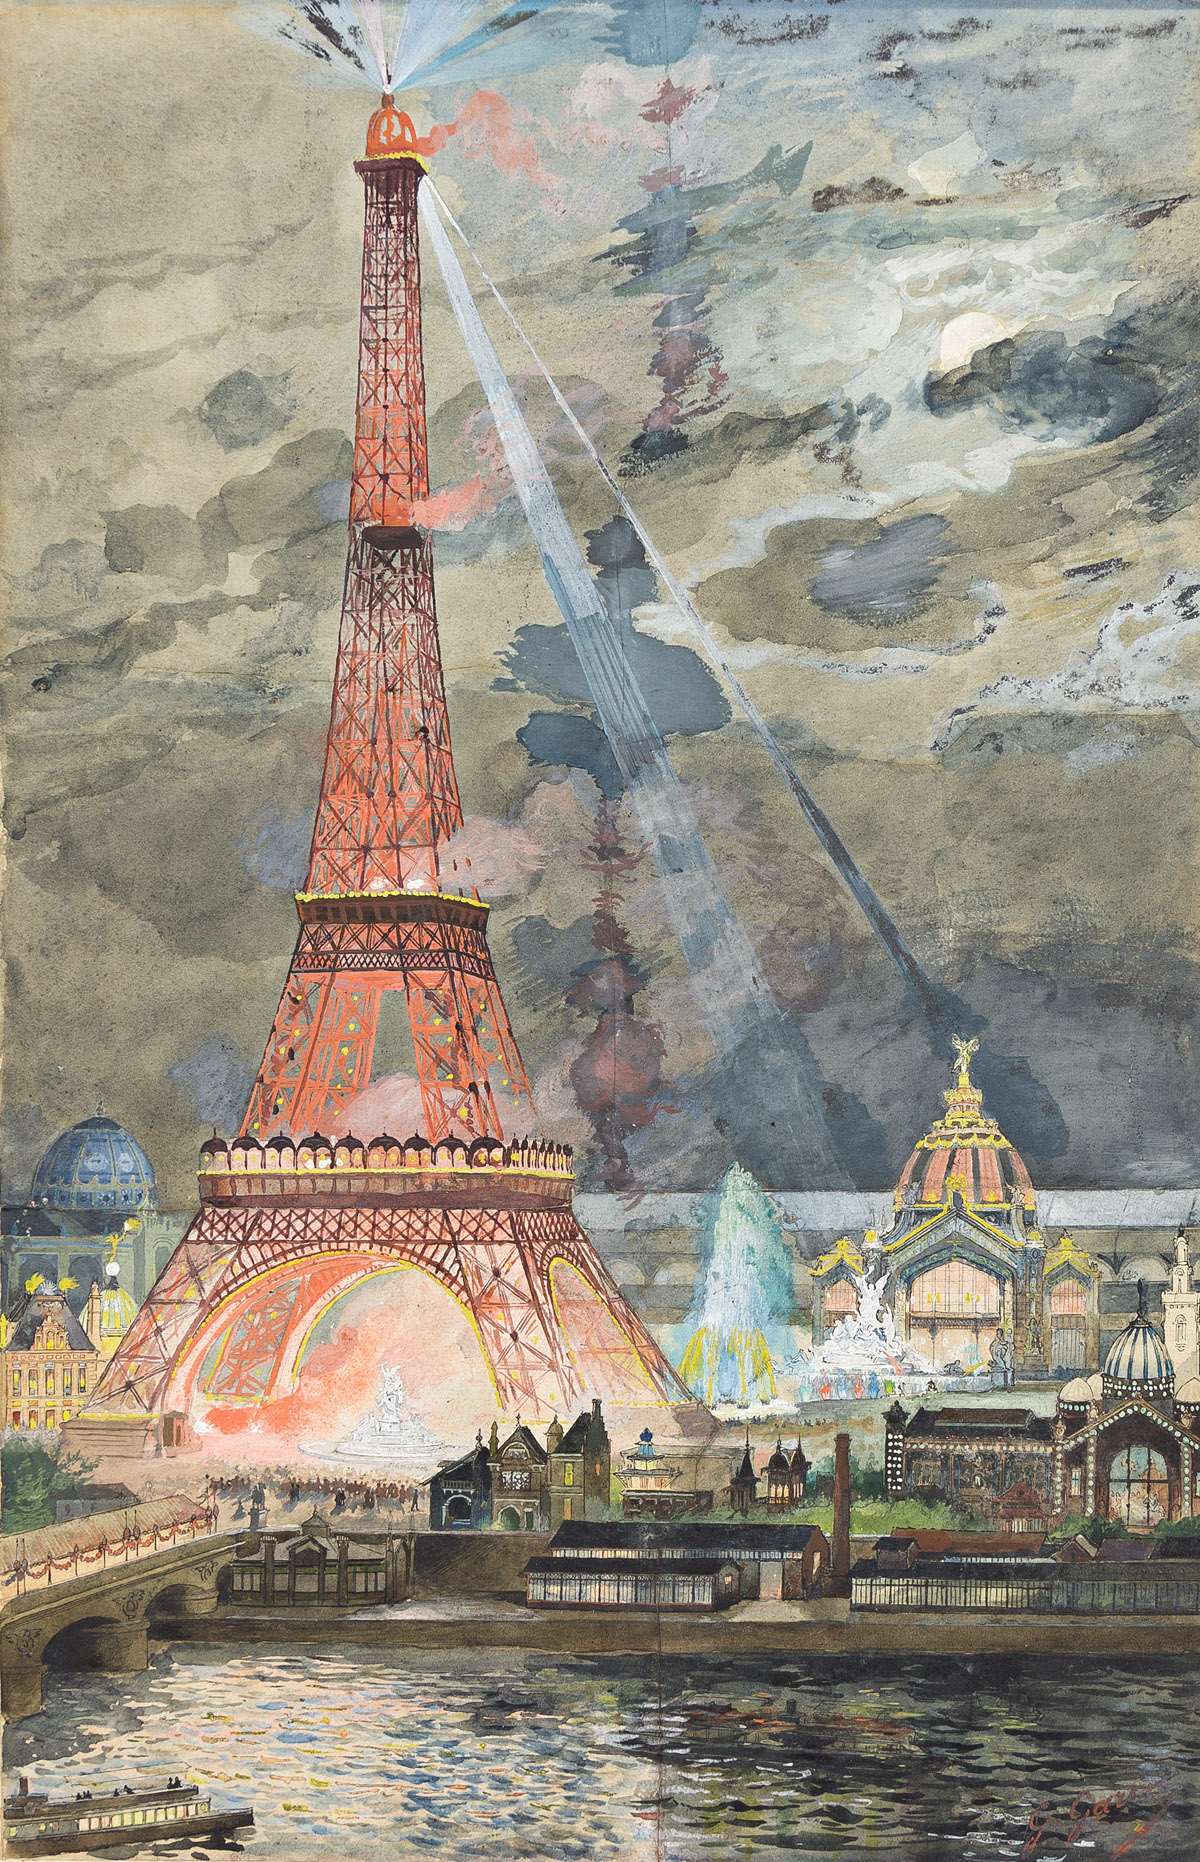 Photophore Tour Eiffel Paris by Atelier Pato 100% made in Paris